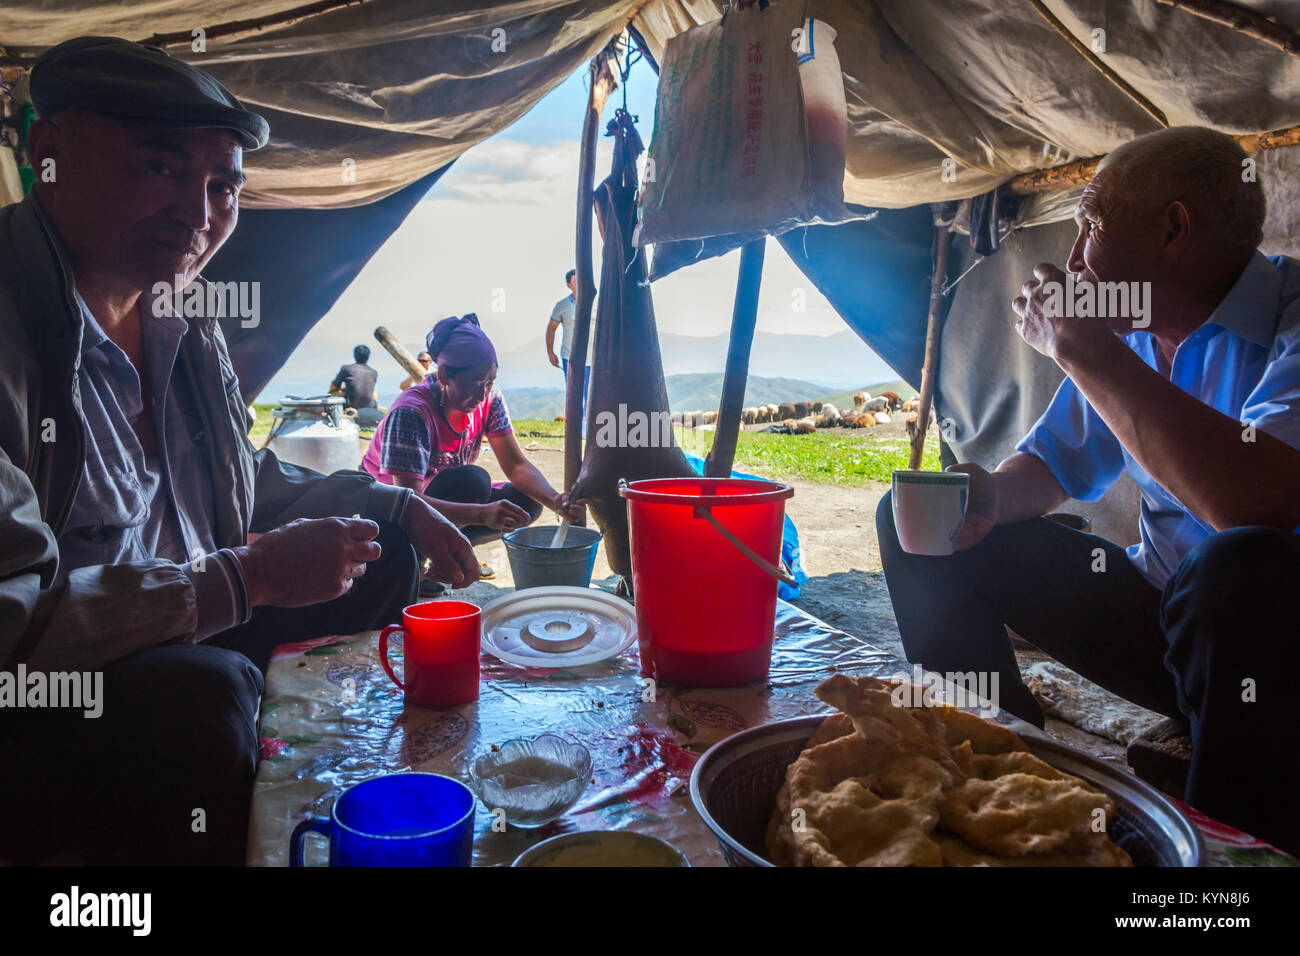 KAZARMAN, Kirgisistan - 15. August: Frau kumis, gegorene Stutenmilch, von einem Schaf Haut in einer einfachen Unterkunft zu zwei Männern. August 2016 Stockfoto